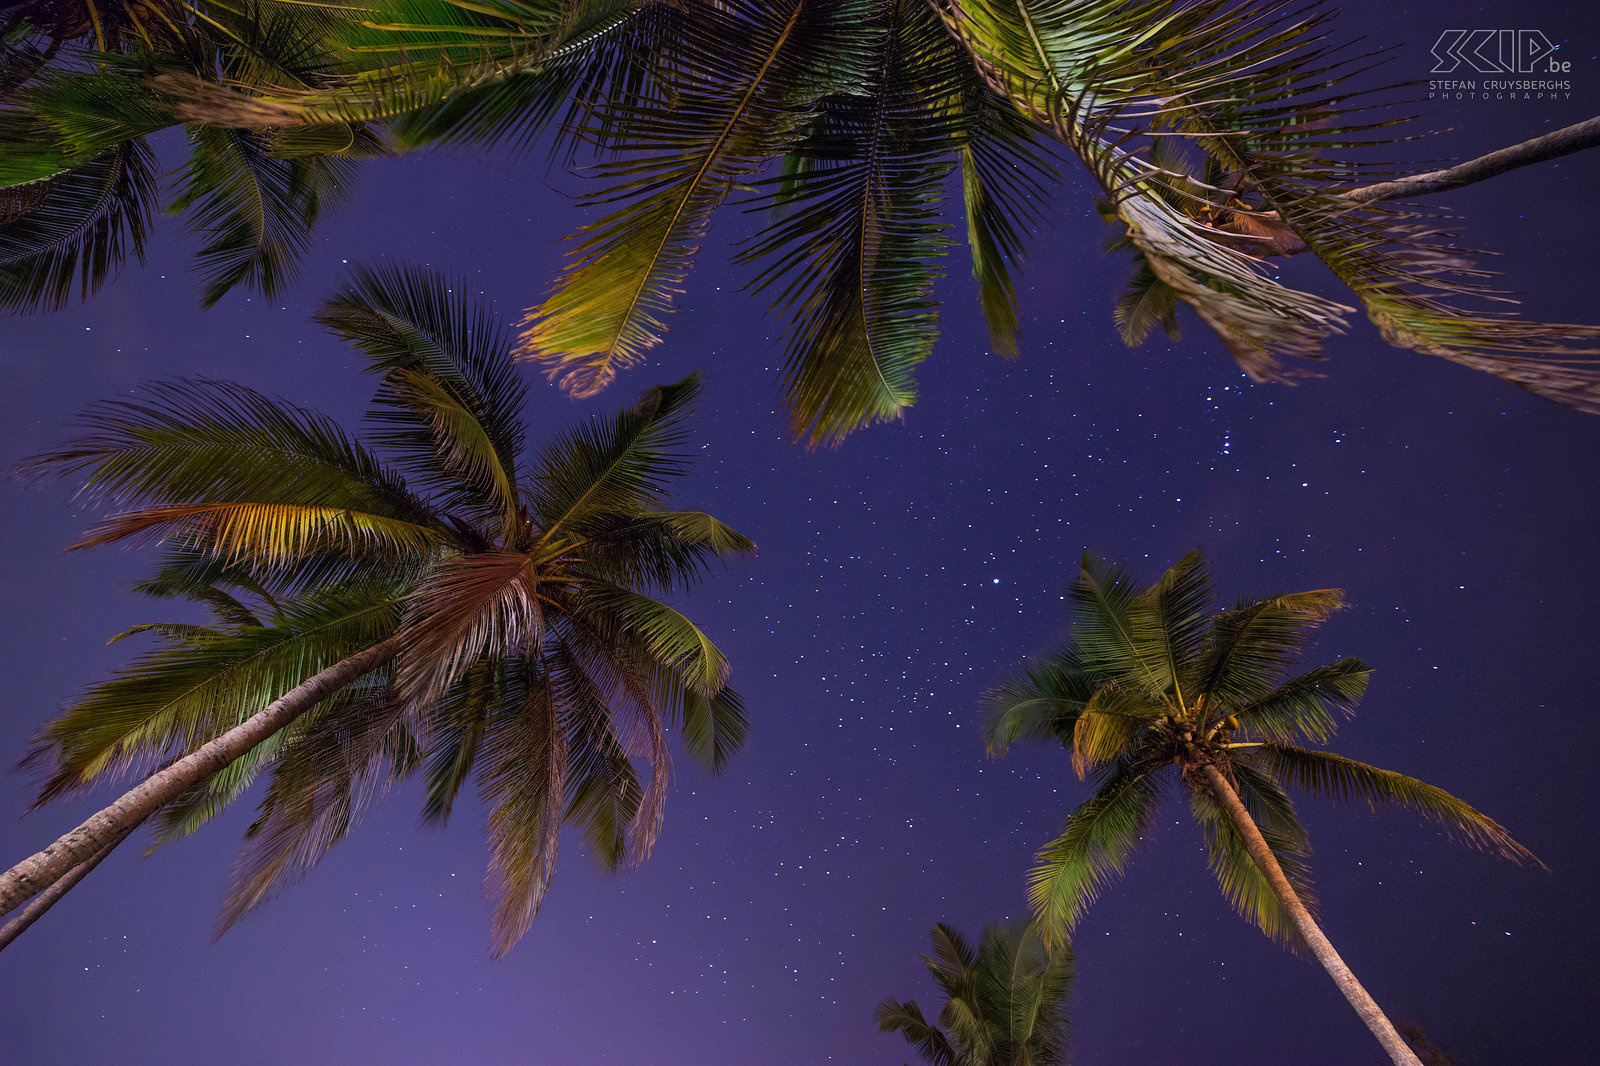 Varca - Palmbomen onder sterrenhemel Een van mijn laatste foto's van onze rondreis doorheen het zuiden van India; tropische palmbomen onder een prachtige sterrenhemel. Stefan Cruysberghs